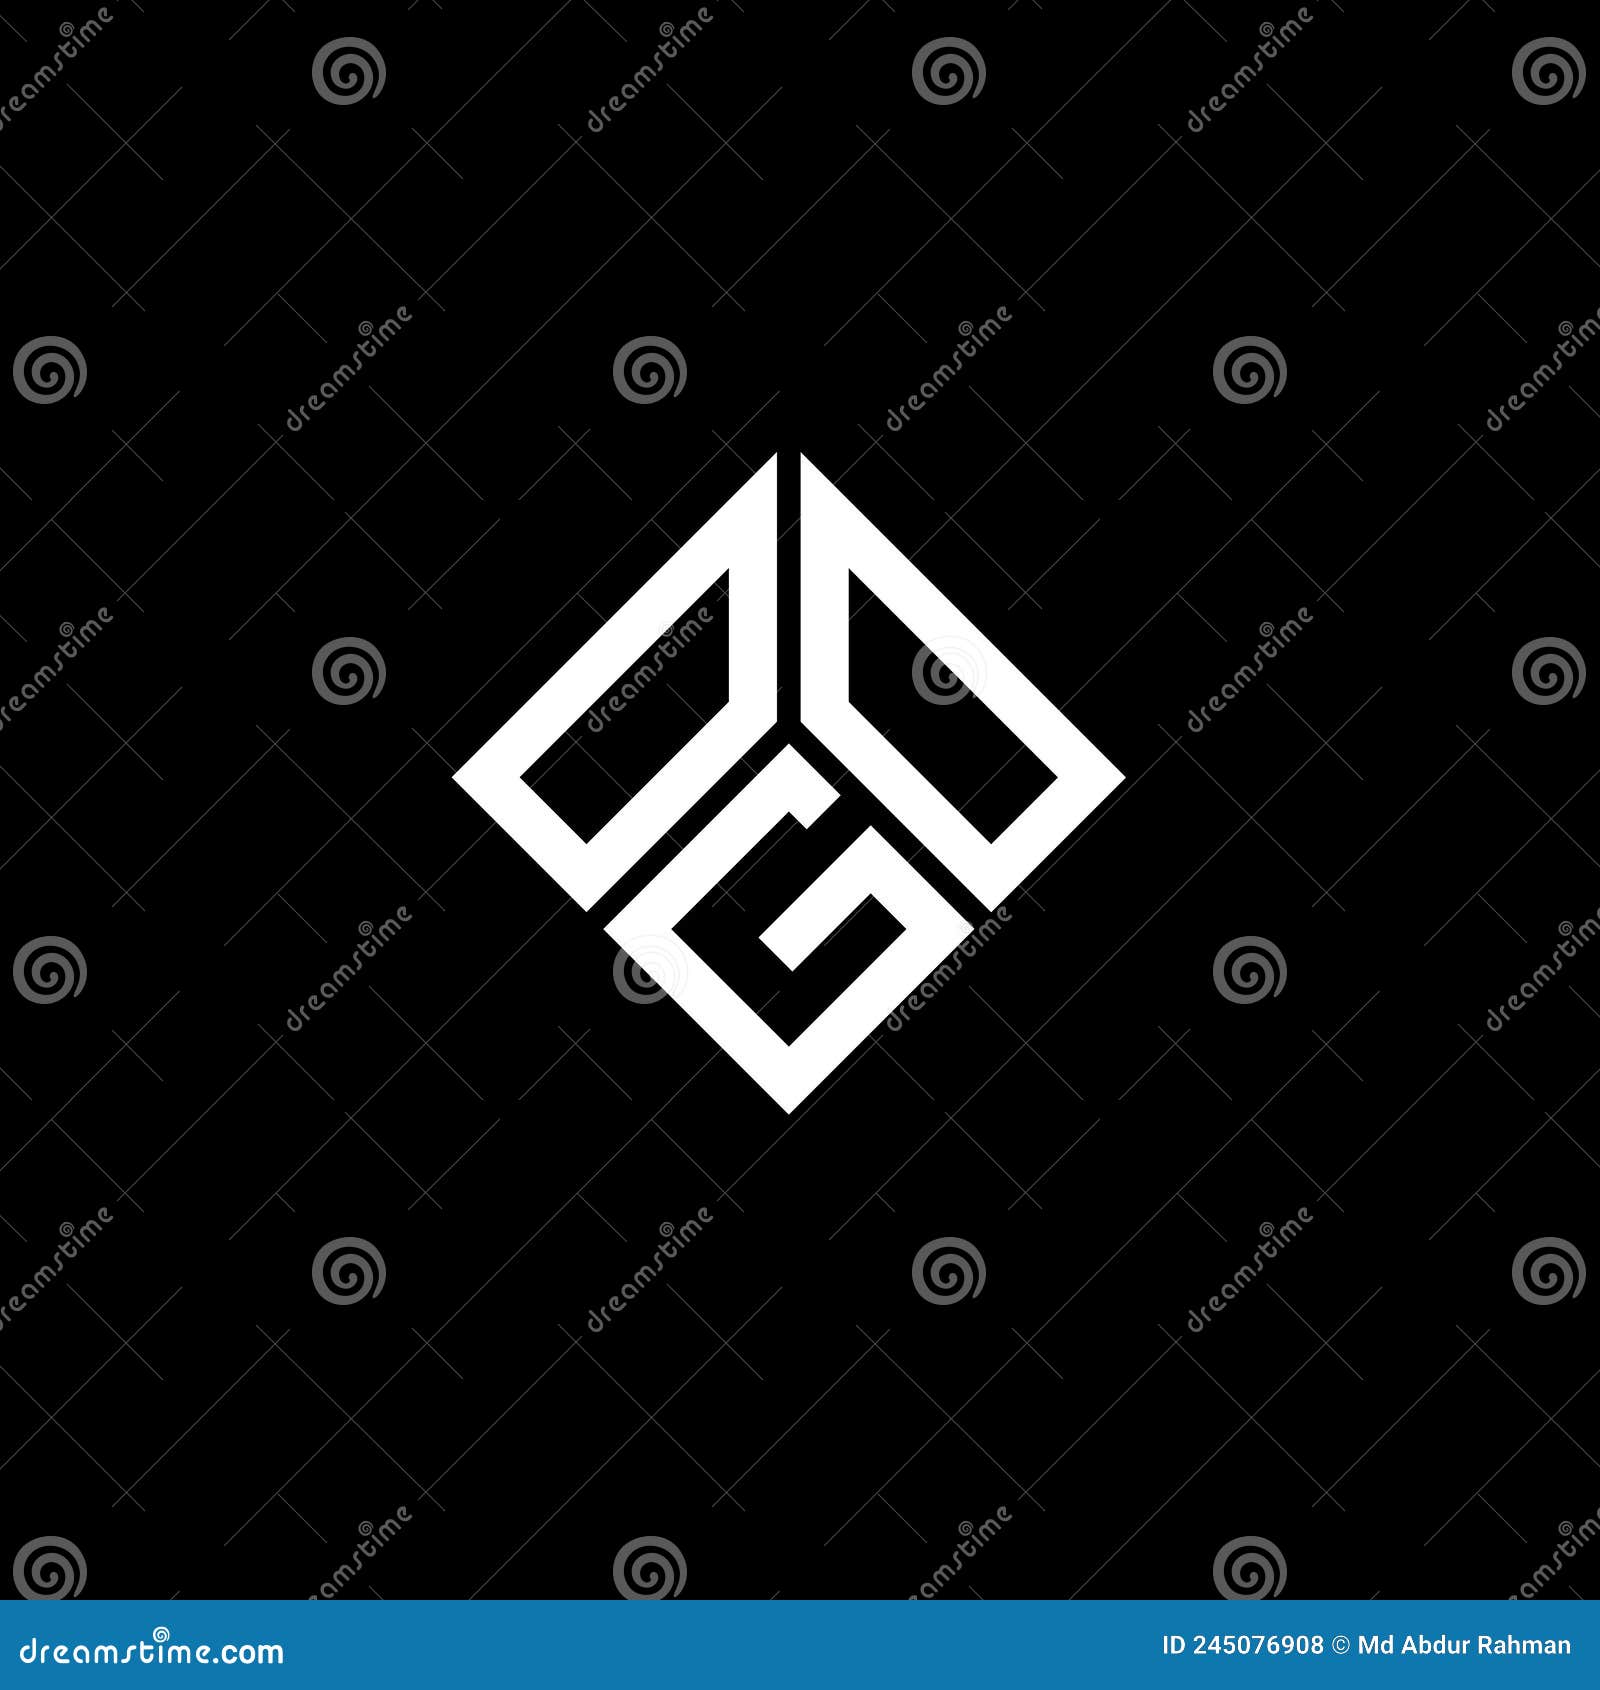 ogo letter logo  on black background. ogo creative initials letter logo concept. ogo letter 